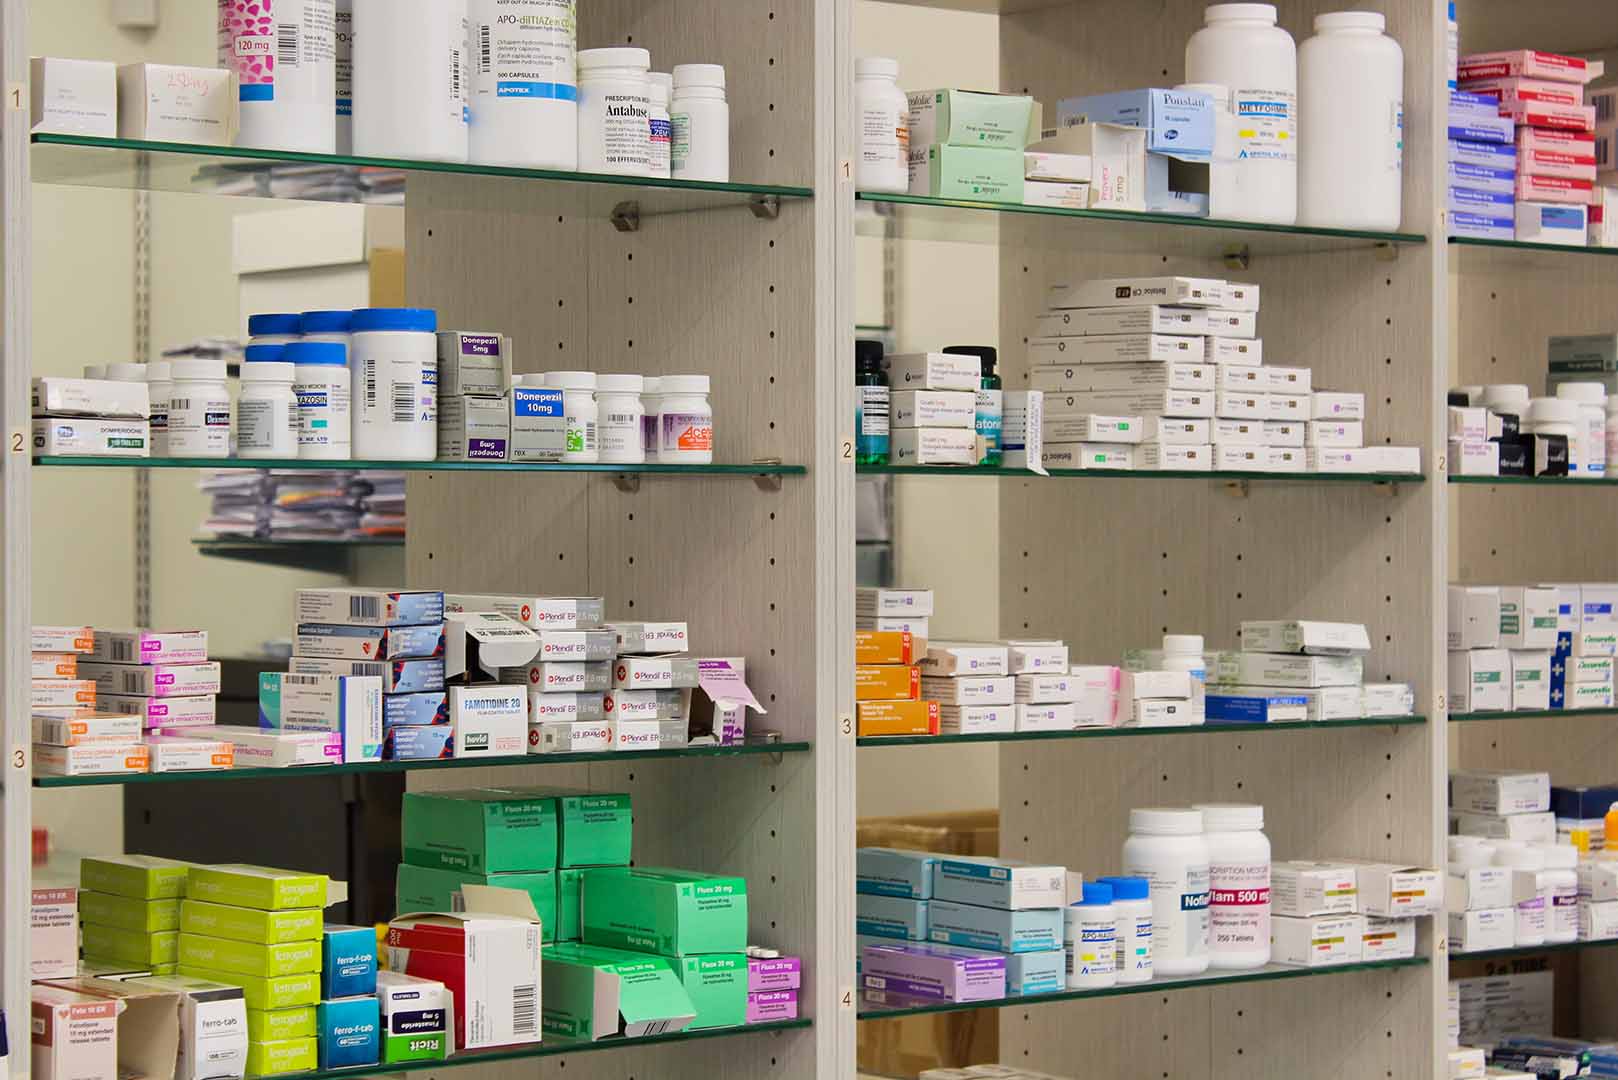 Shelves of pharmaceuticals at Silverstream Kaiapoi Pharmacy